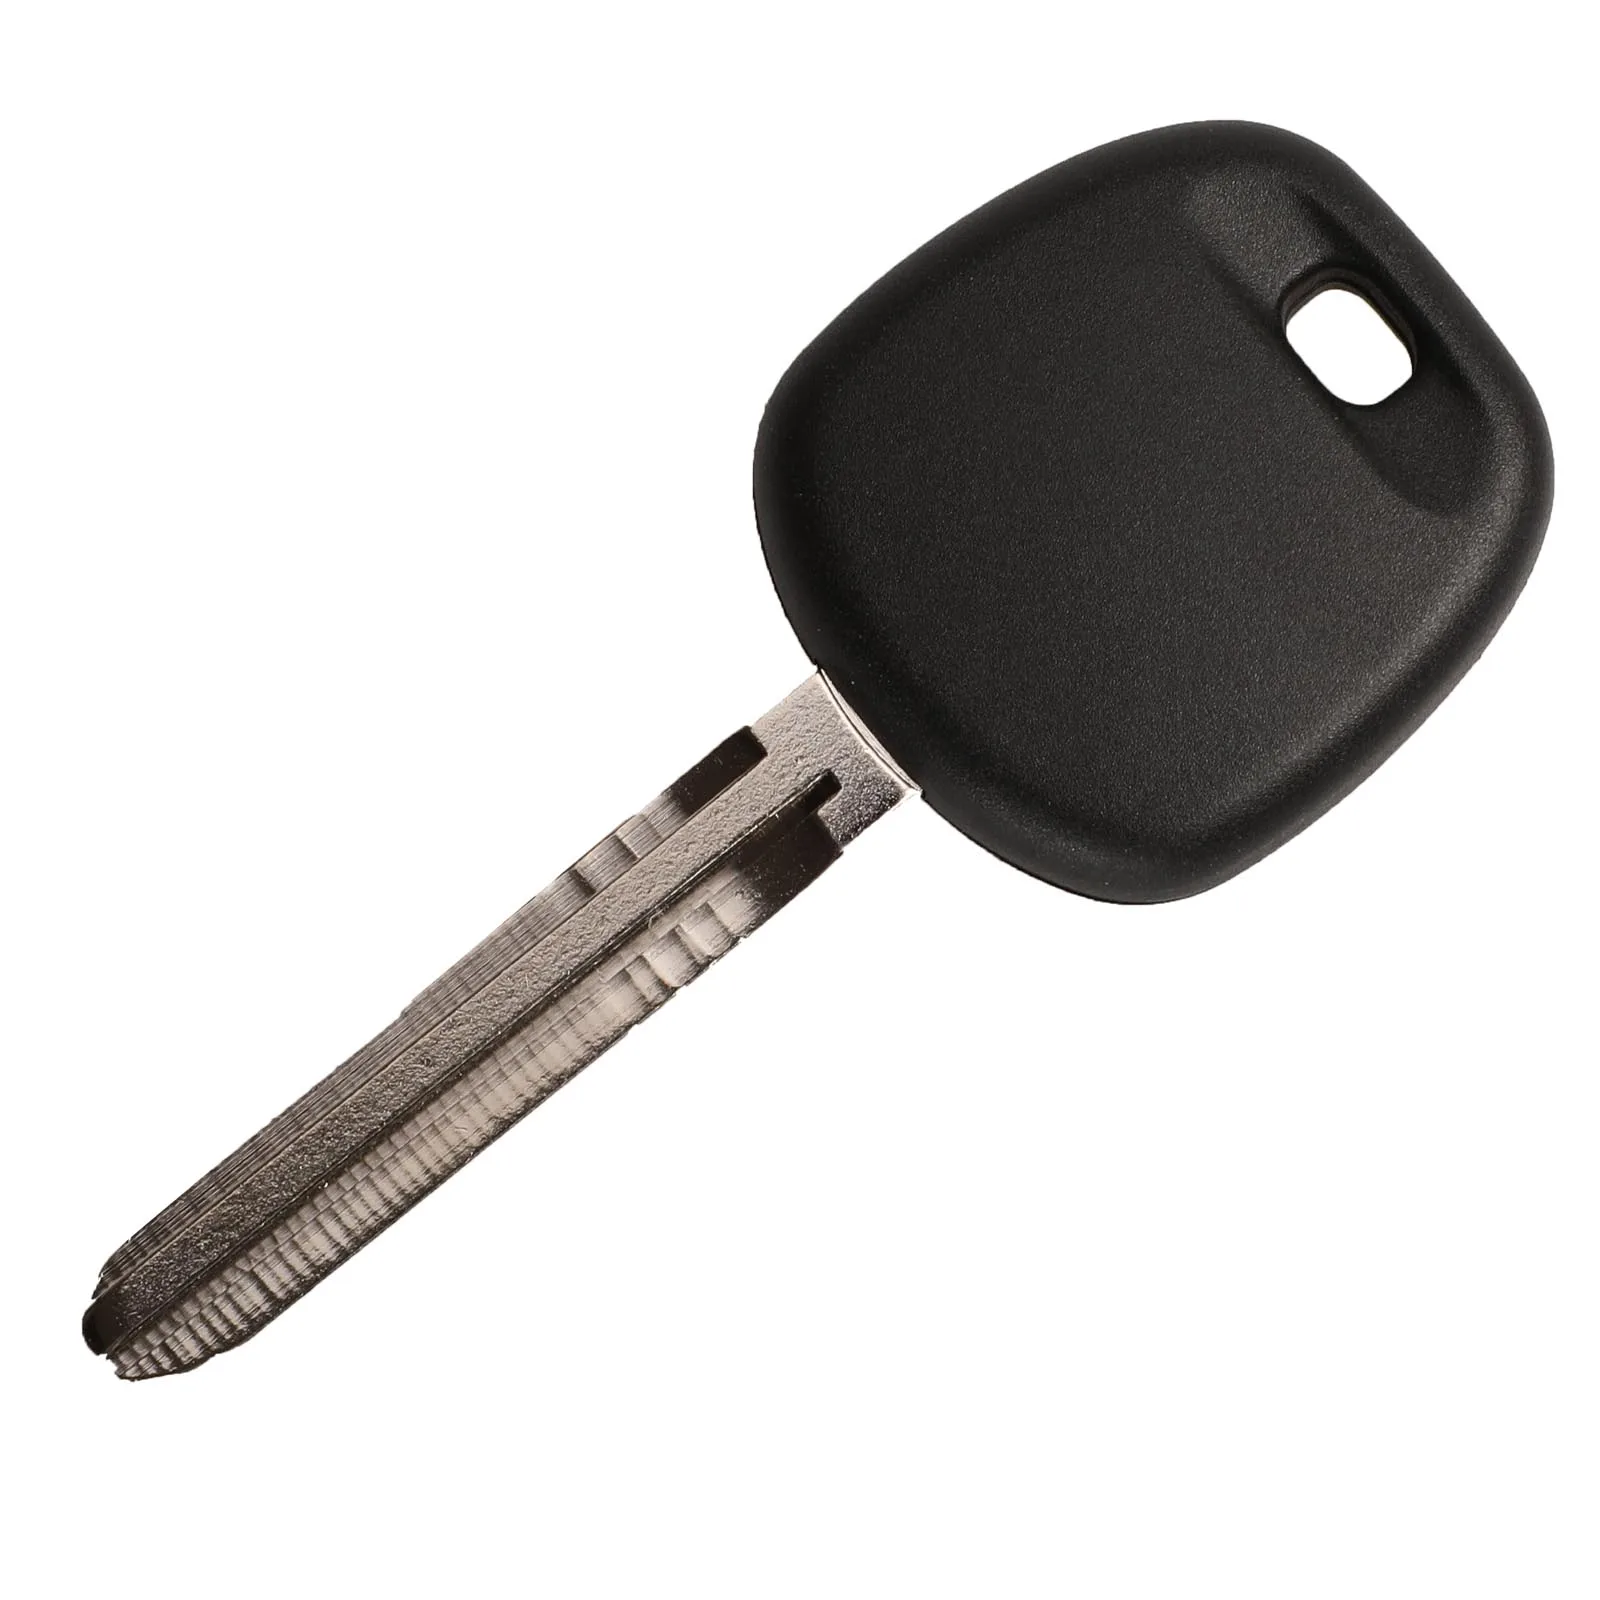 Jingyuqin транспондер ключ для Toyota Замена дистанционного управления автомобильный ключ чехол Брелок с 4D67 чип Uncut TOY43 лезвие - Количество кнопок: TOY43